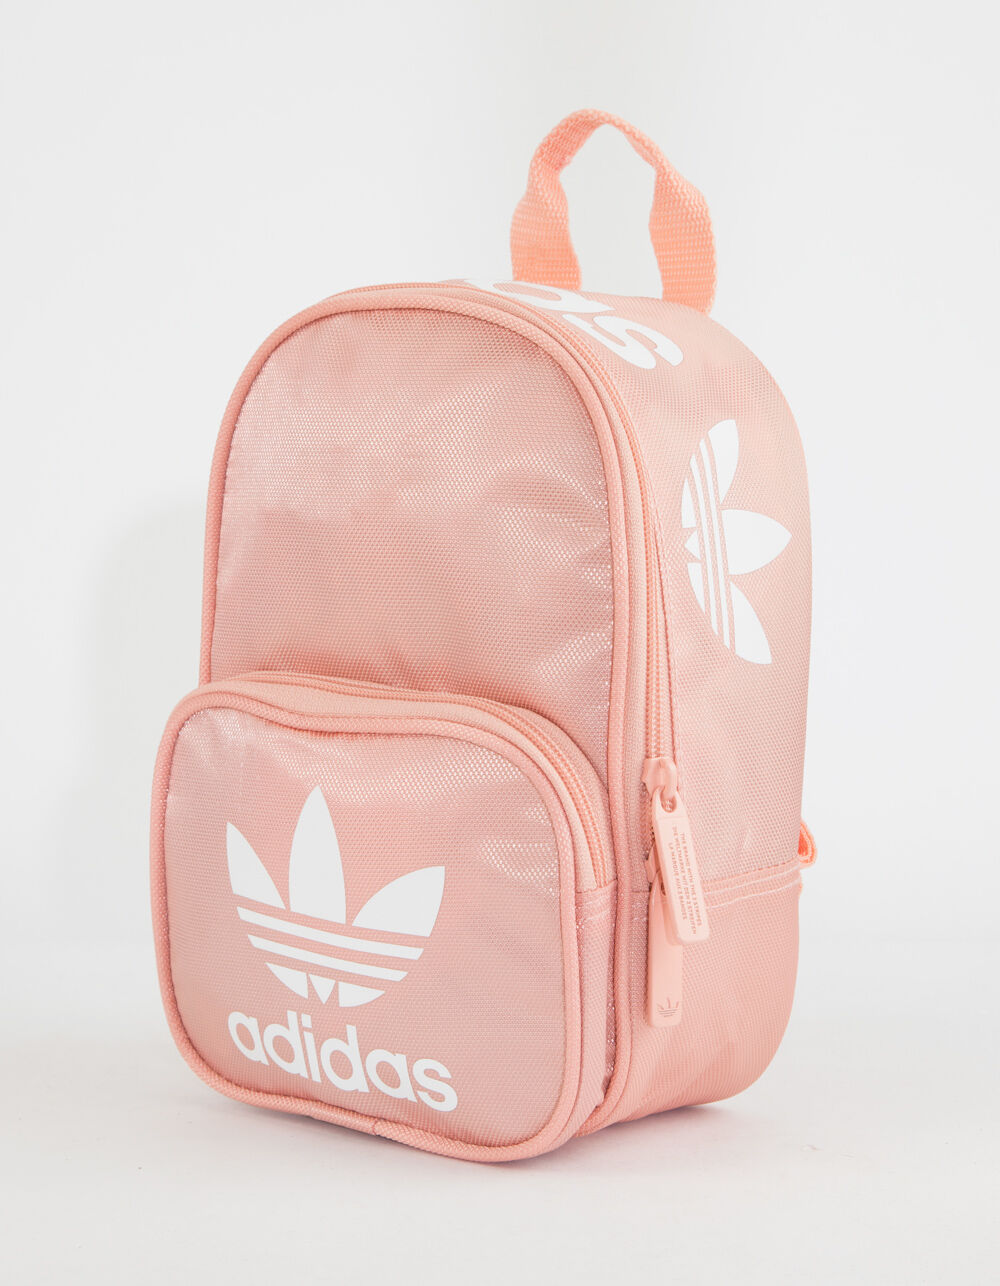 Originals Santiago Pink Mini Backpack PINK Tillys